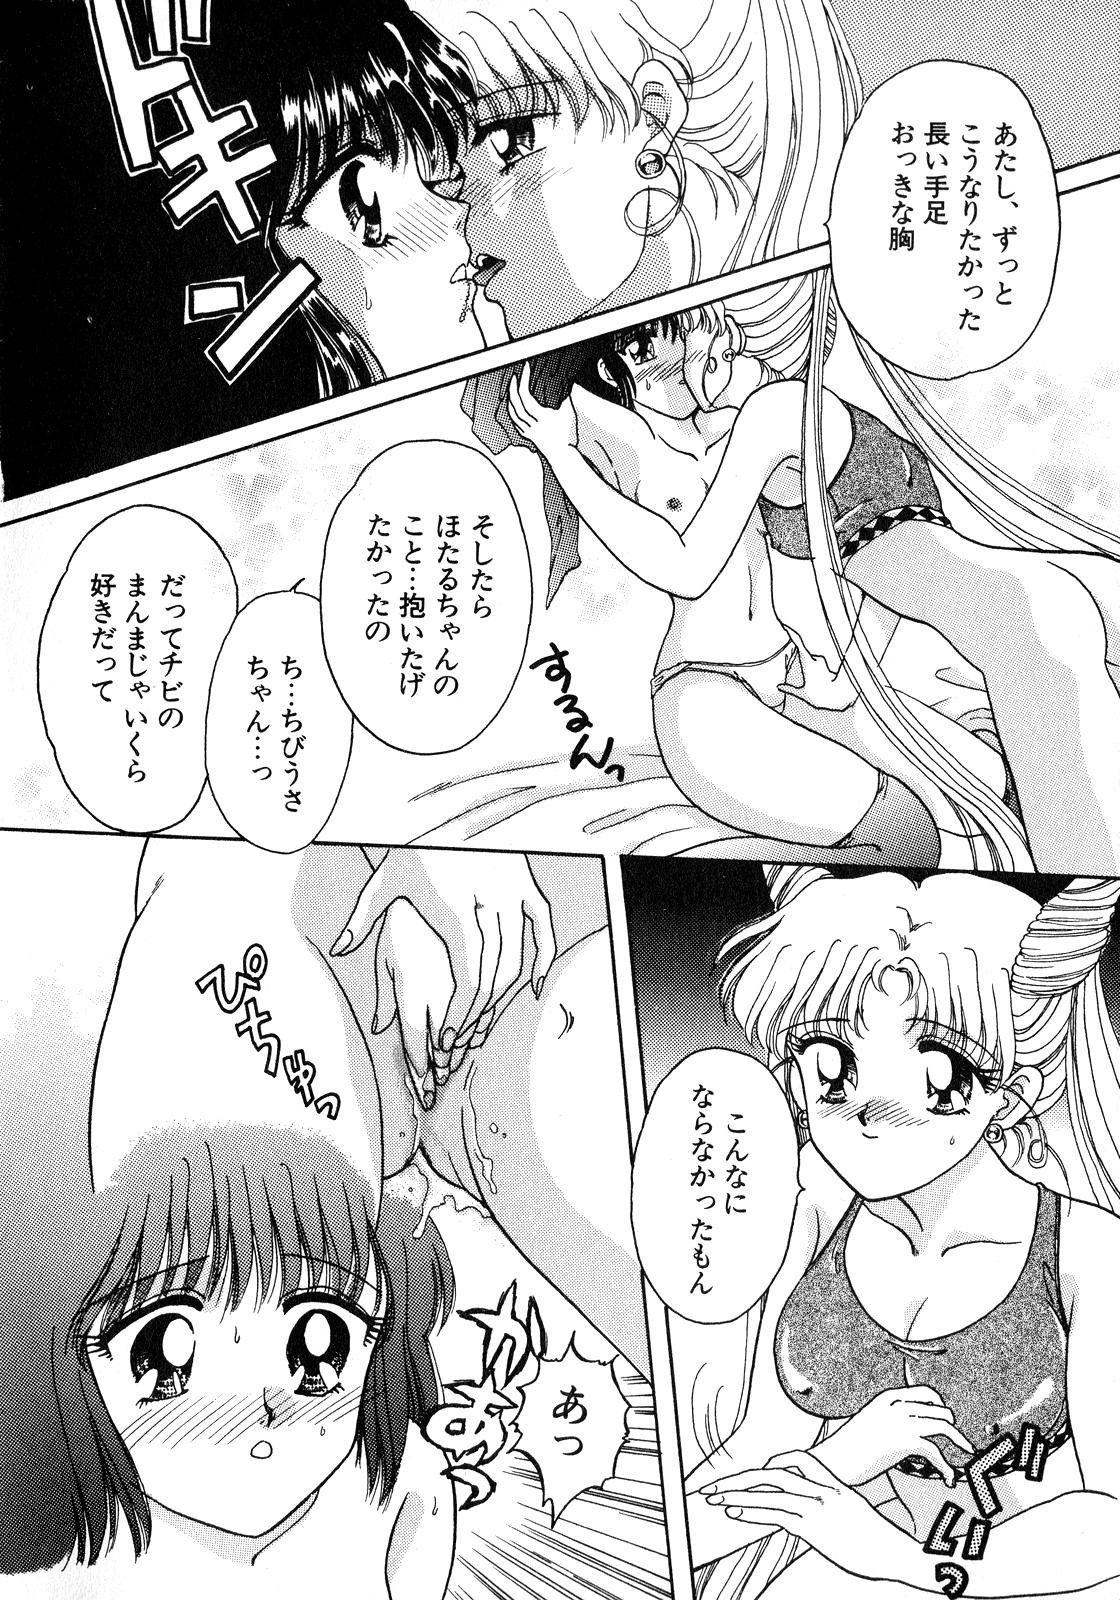 Big Black Dick Lunatic Party 8 - Sailor moon Coed - Page 13